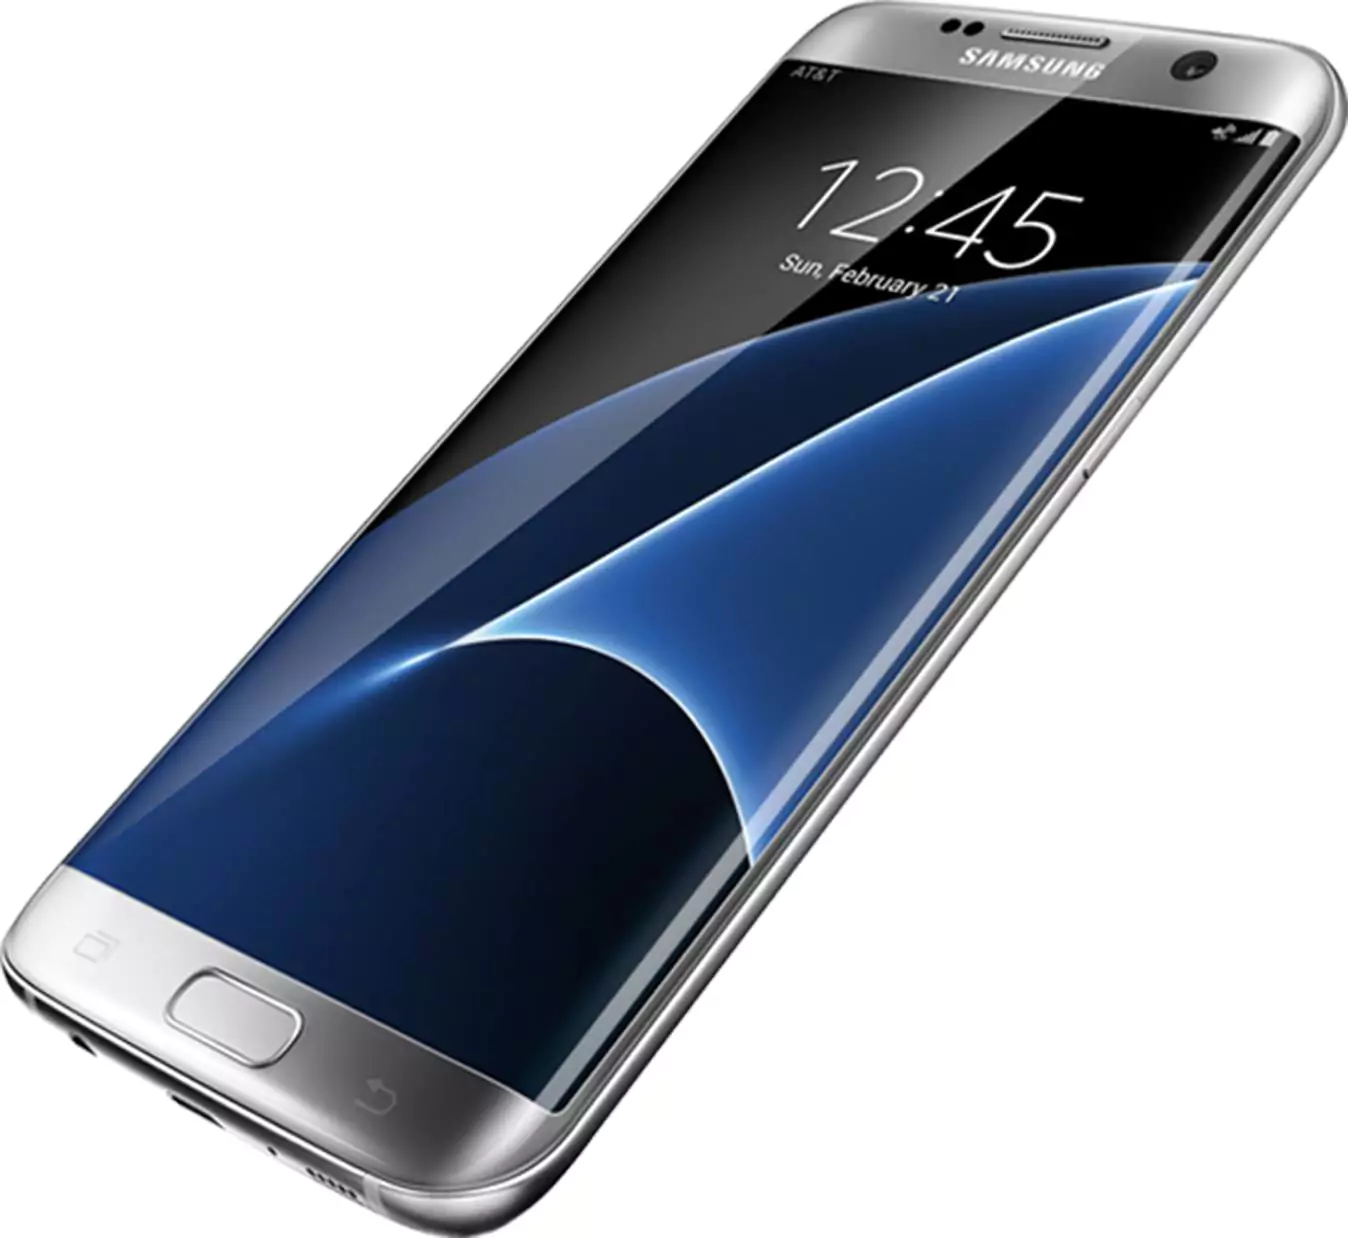 Best Samsung smartphones